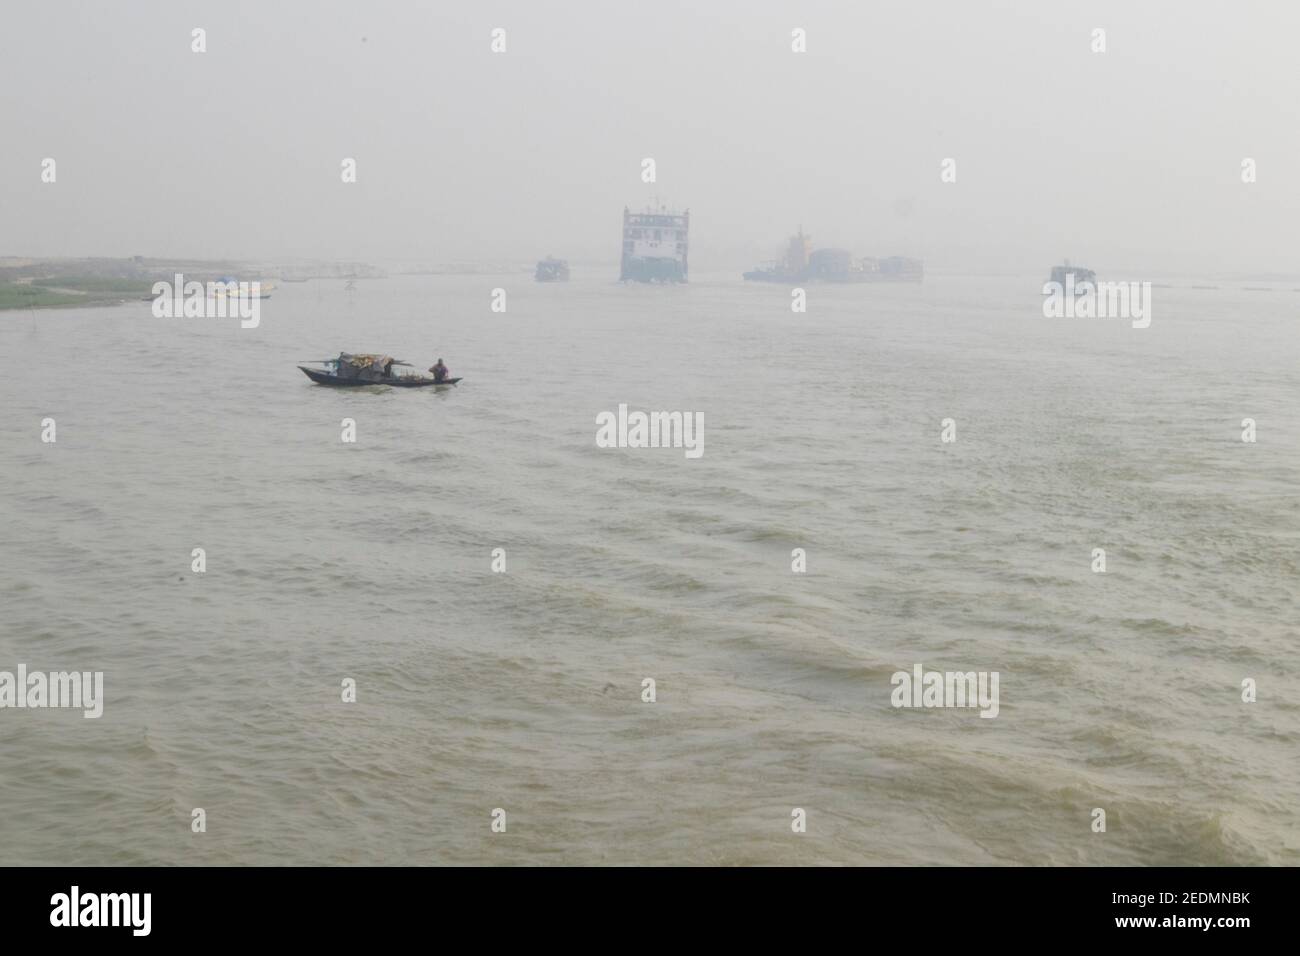 Il Bangladesh è una terra di fiumi. Il trasporto di acqua è uno dei principali sistemi di trasporto qui. Lauch, Ferry, Boat and Speed Boat è il veicolo principale qui. Foto Stock